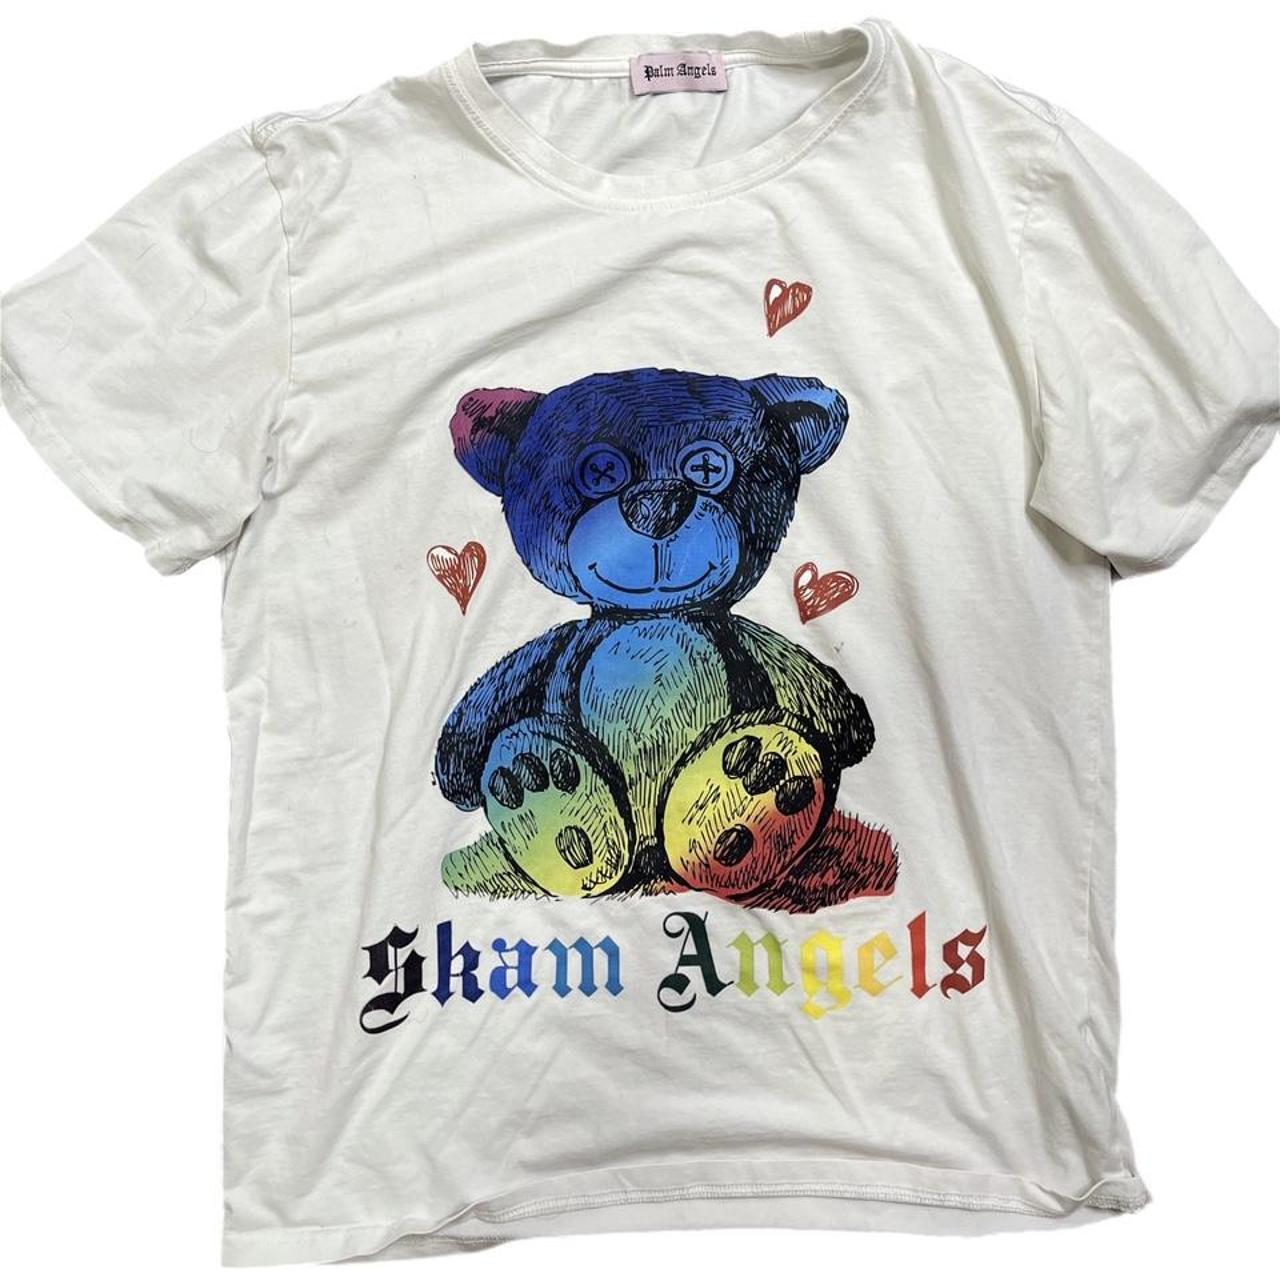 Palm Angels Women's T-shirt